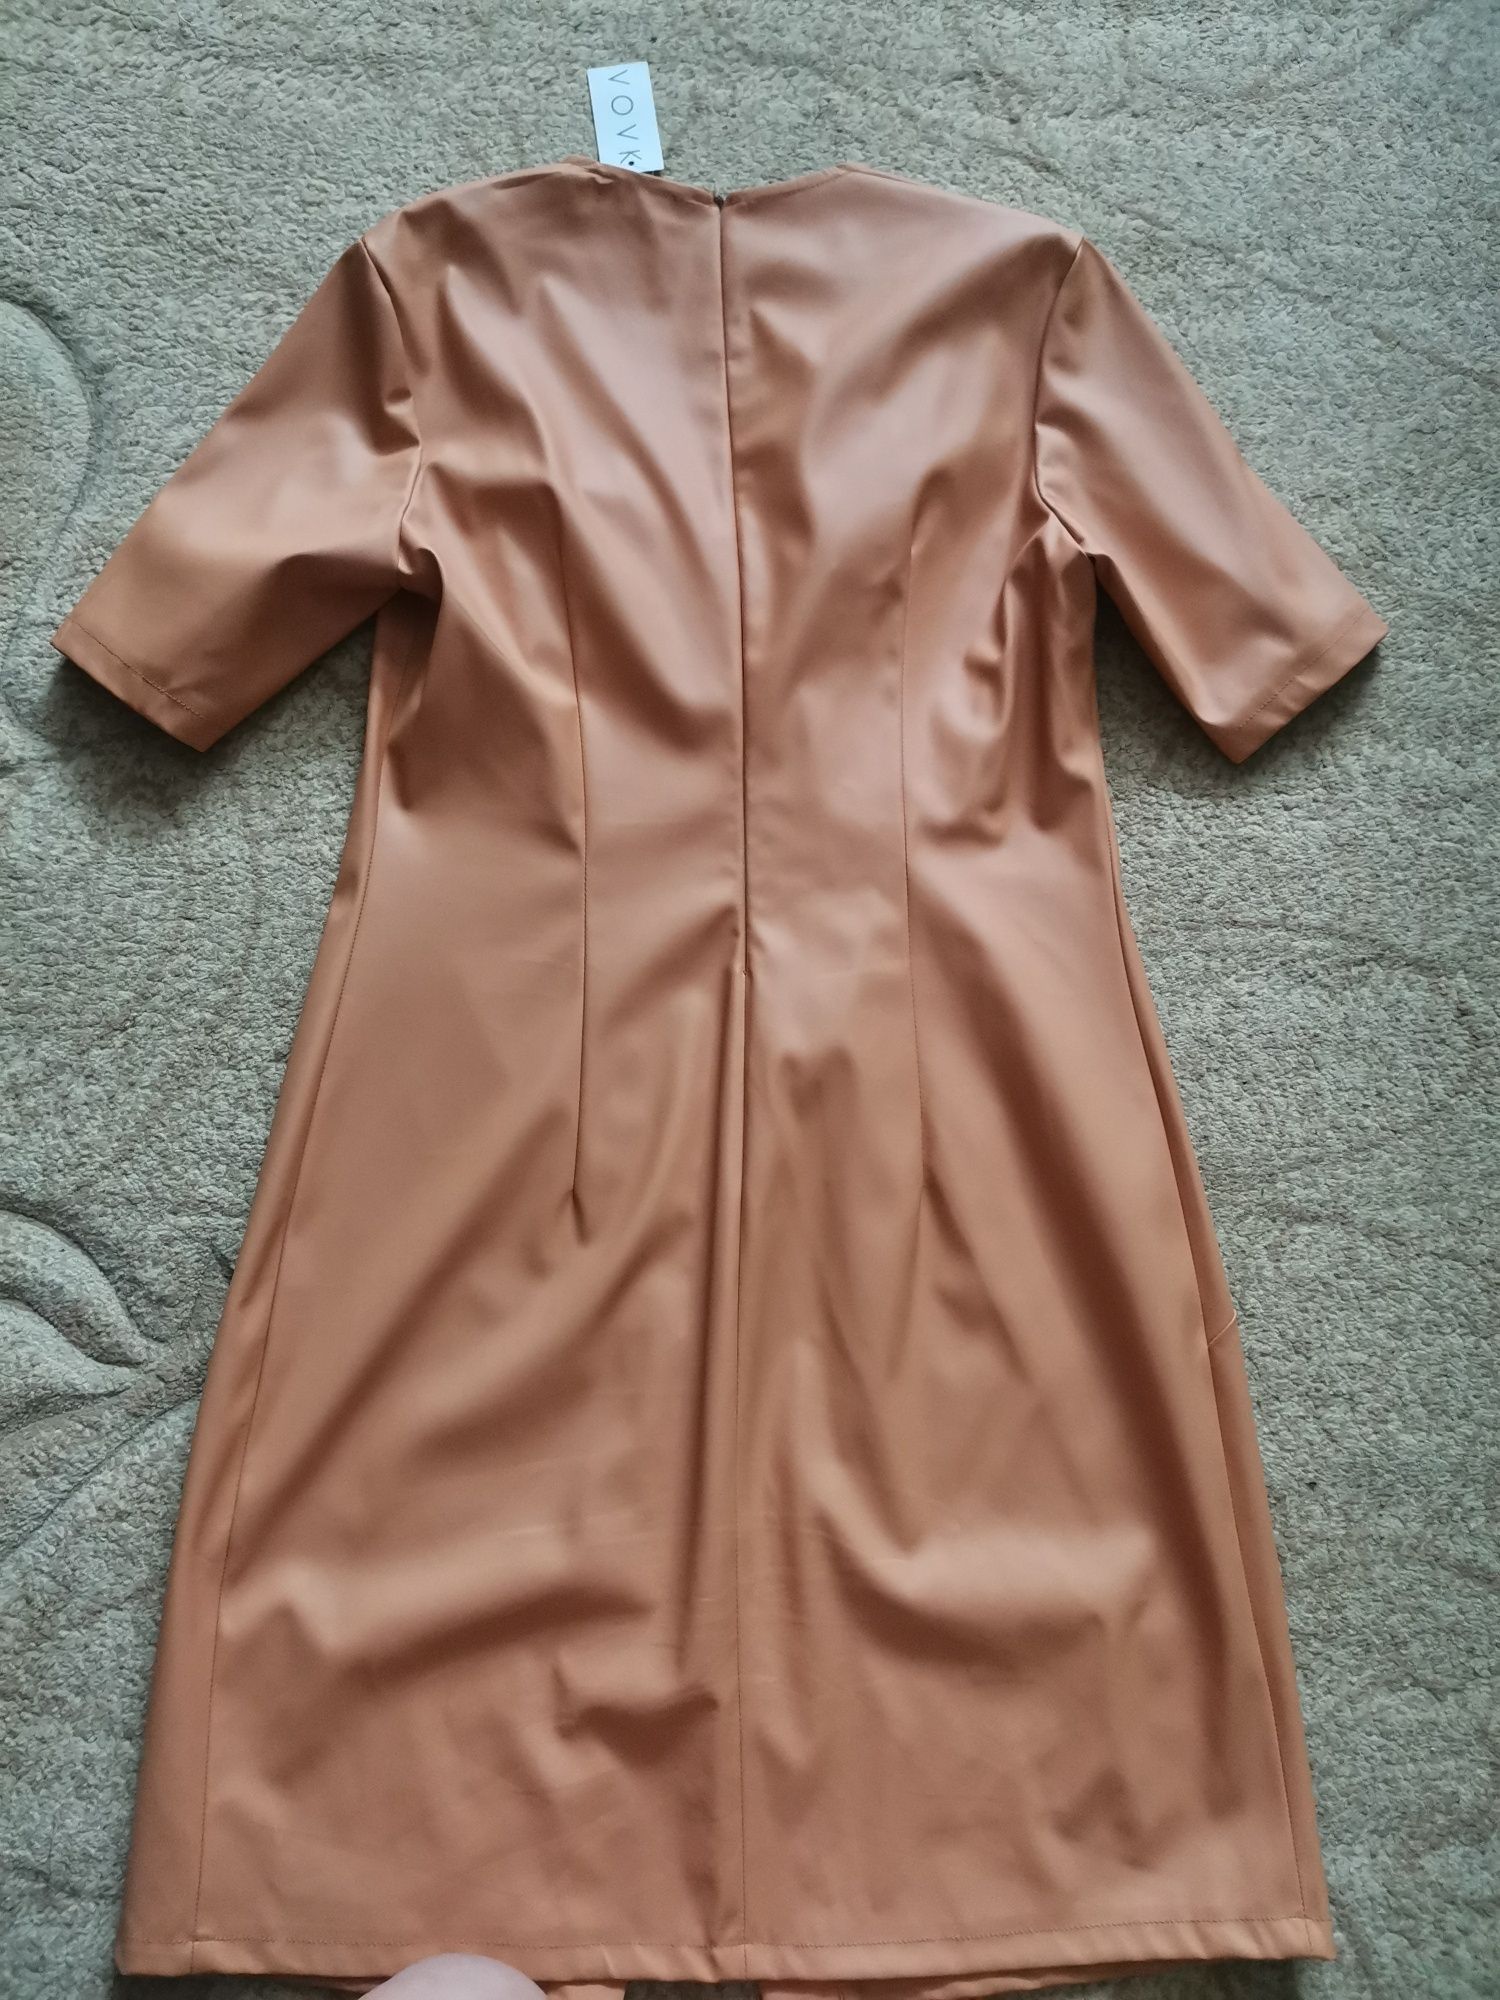 Сукня з еко шкіри від українського бренду Vovk, розмір L